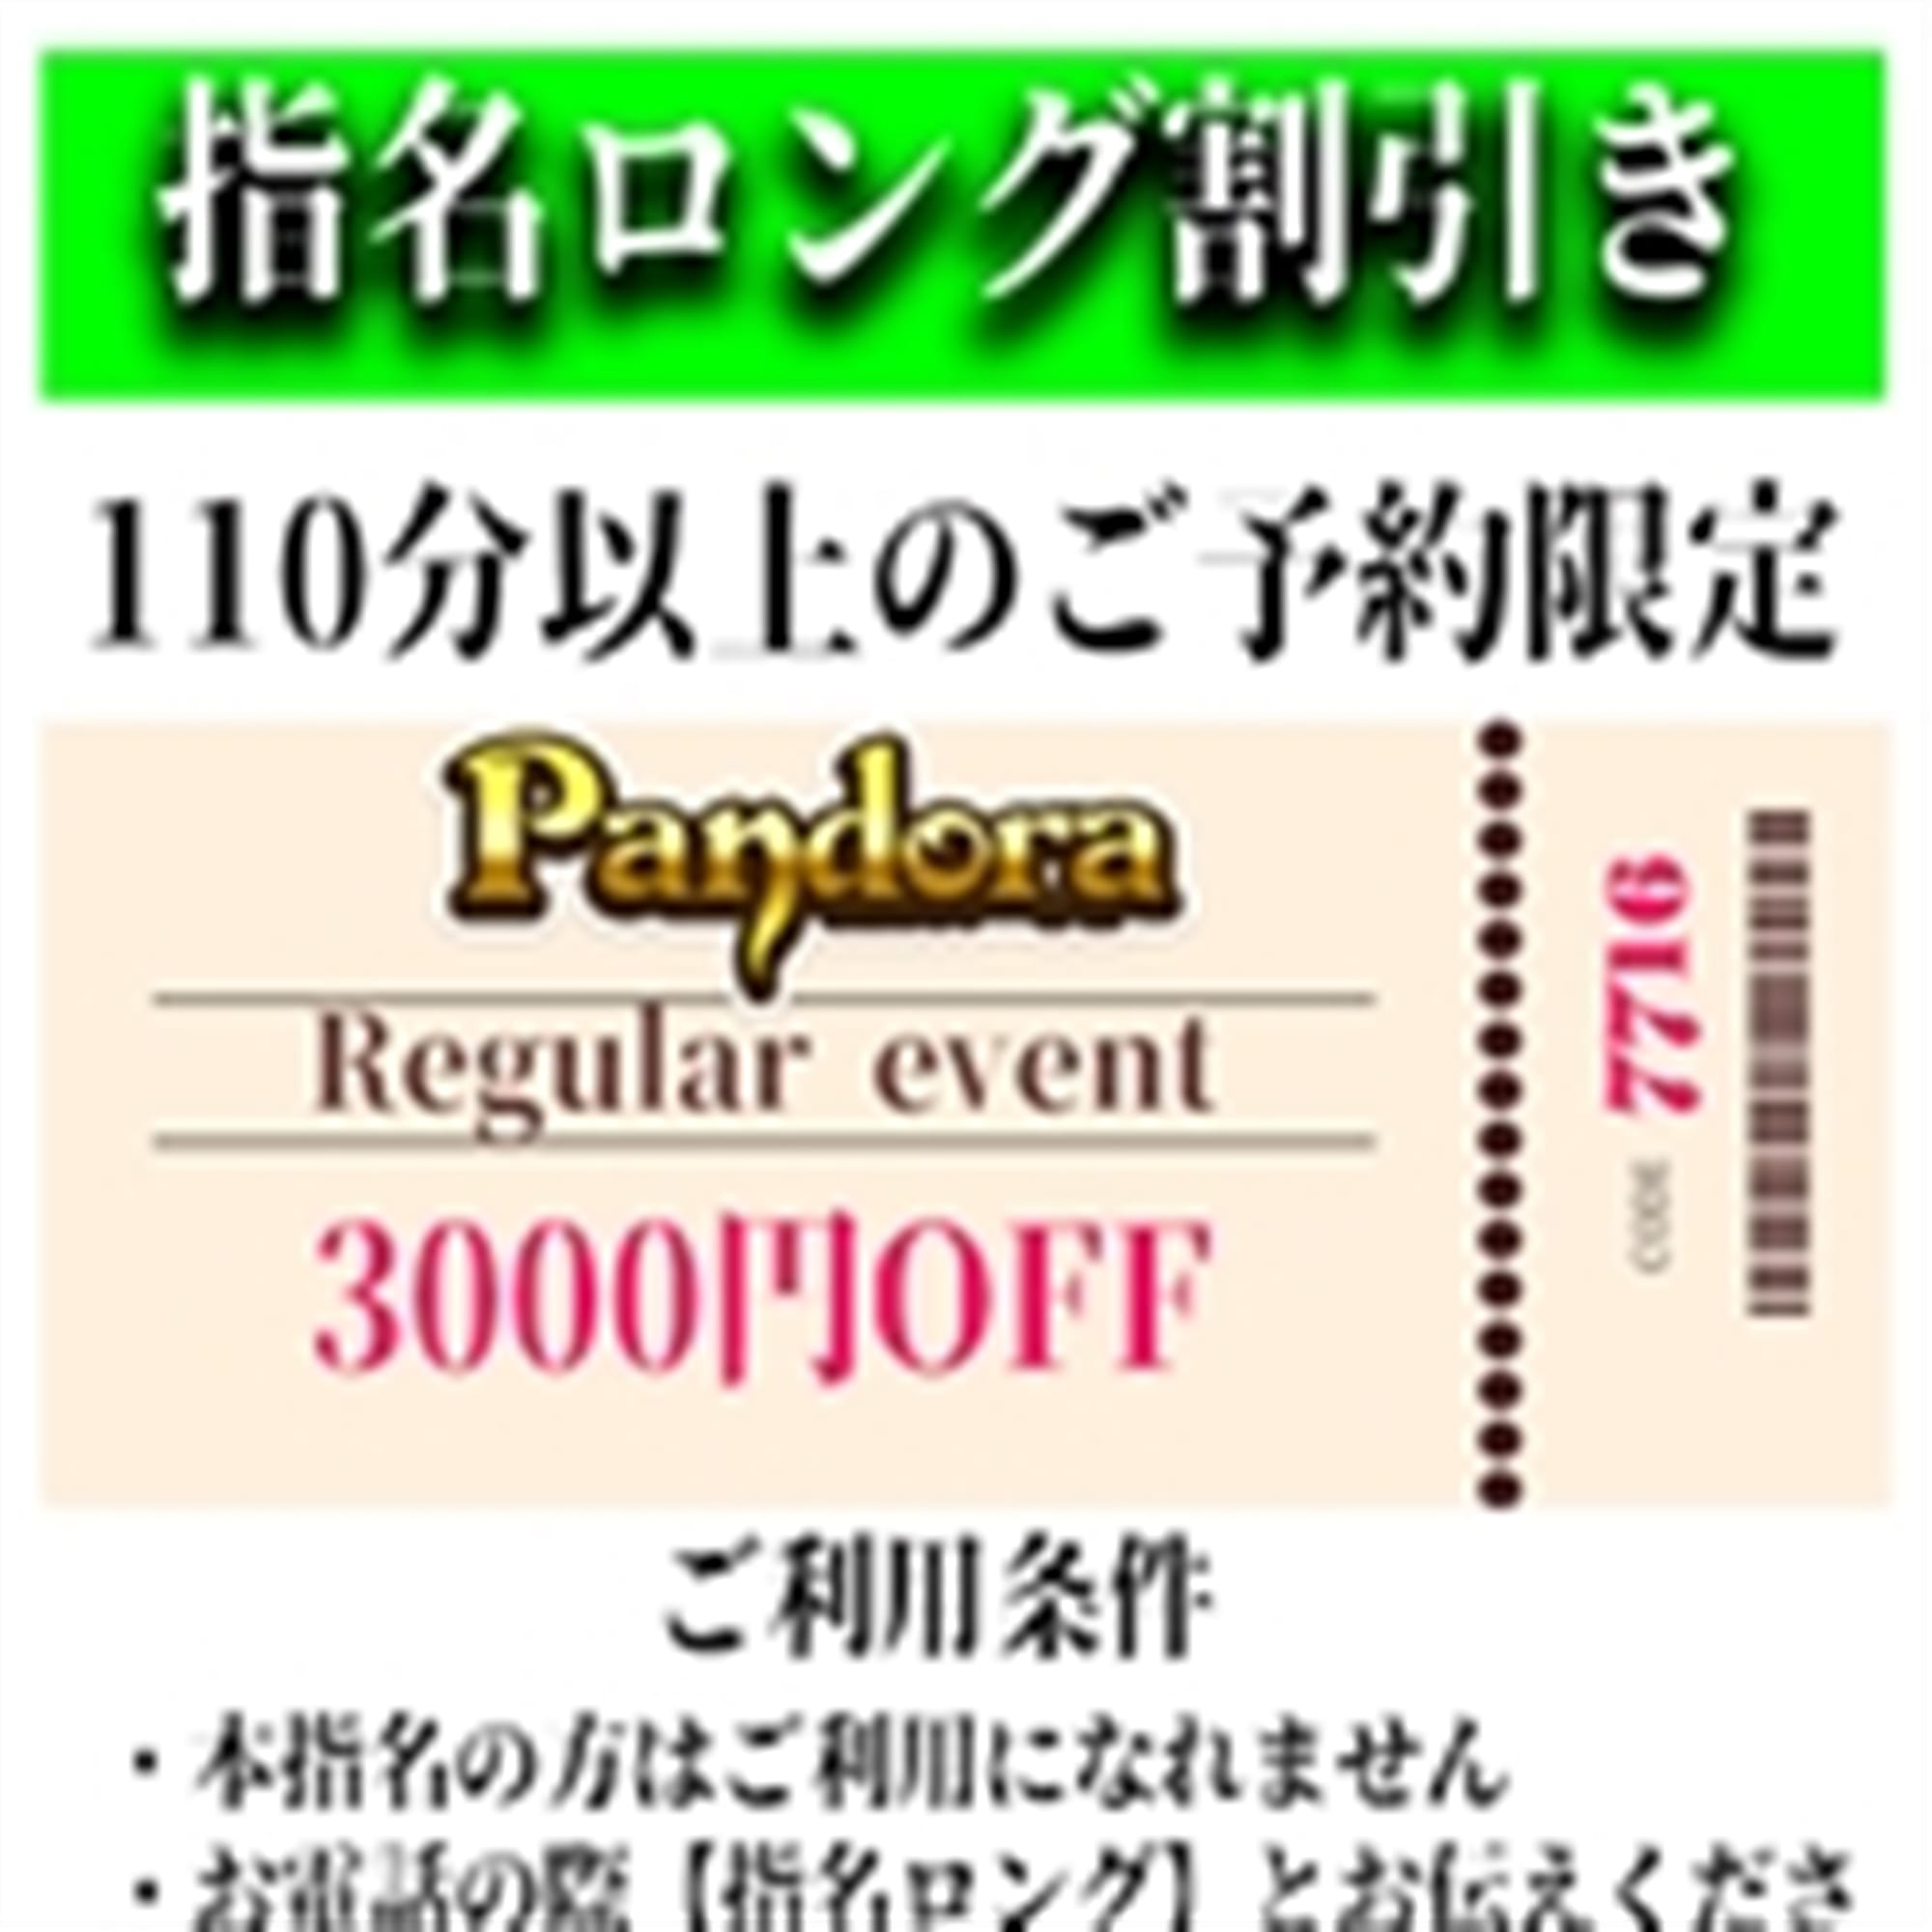 「ご指名のお客様も遊べるロングコース割引」04/26(金) 02:37 | Pandora(パンドラ)新潟のお得なニュース